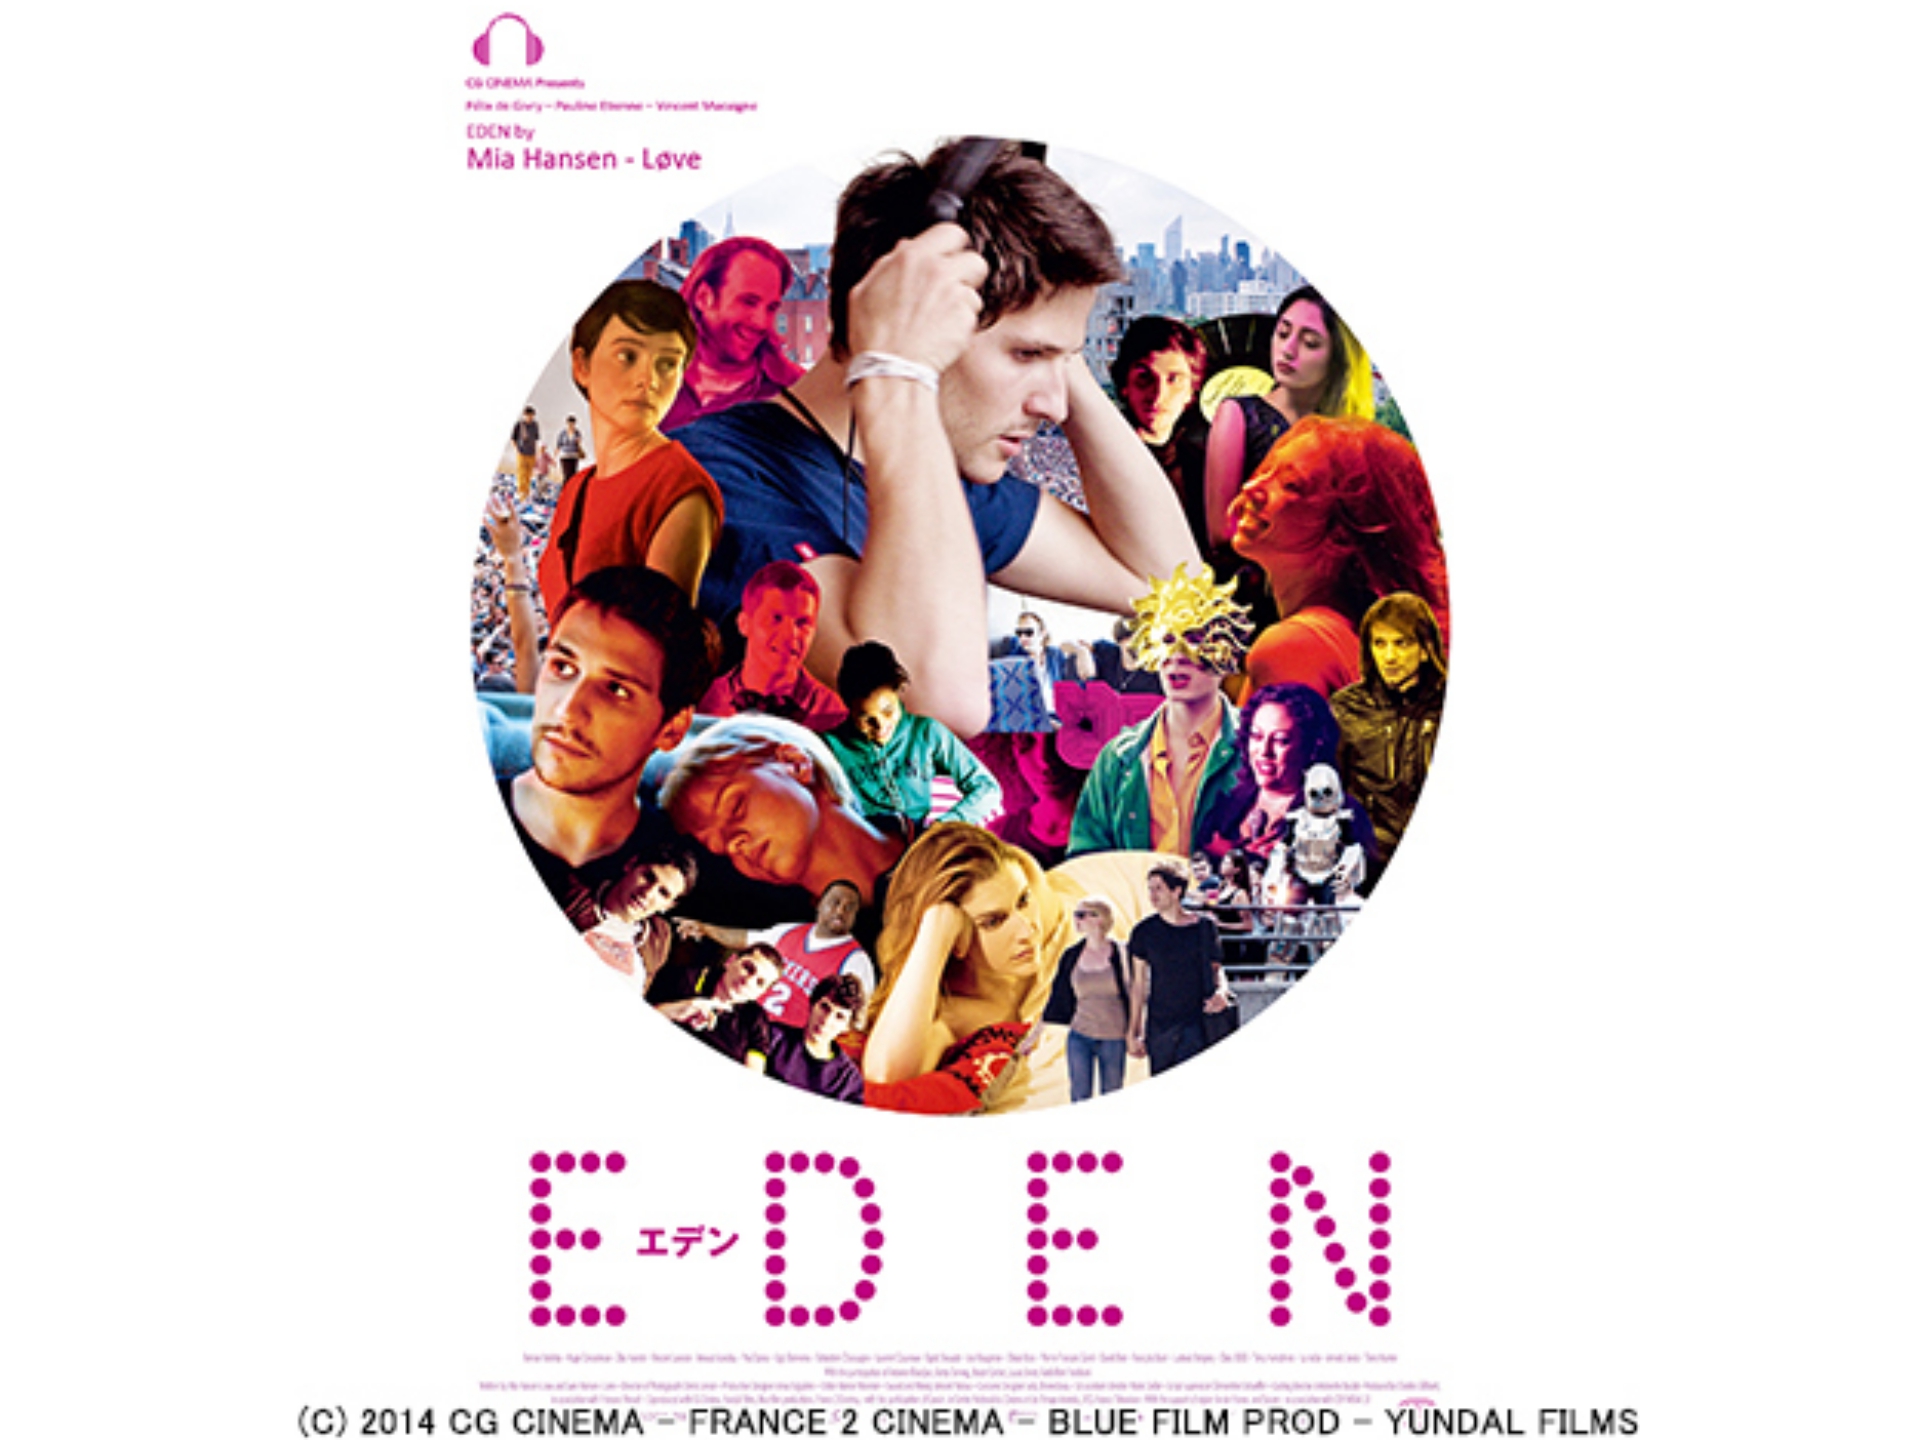 無料視聴あり 映画 Eden エデン の動画 初月無料 動画配信サービスのビデオマーケット